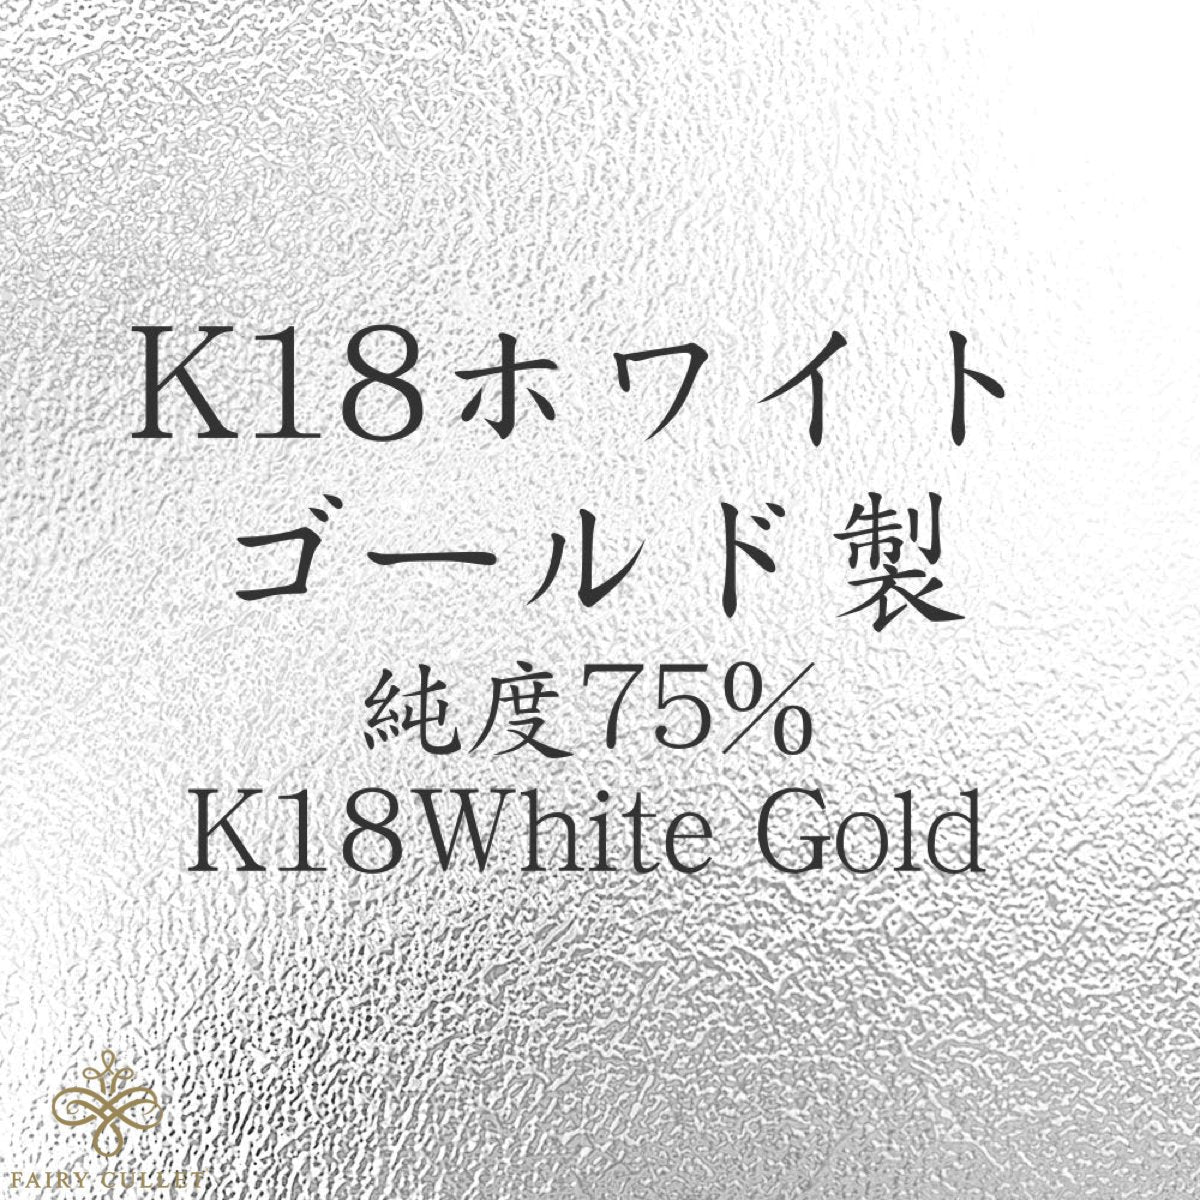 ホワイトゴールドネックレス K18WG スクリューチェーン 40cm (約0.8g